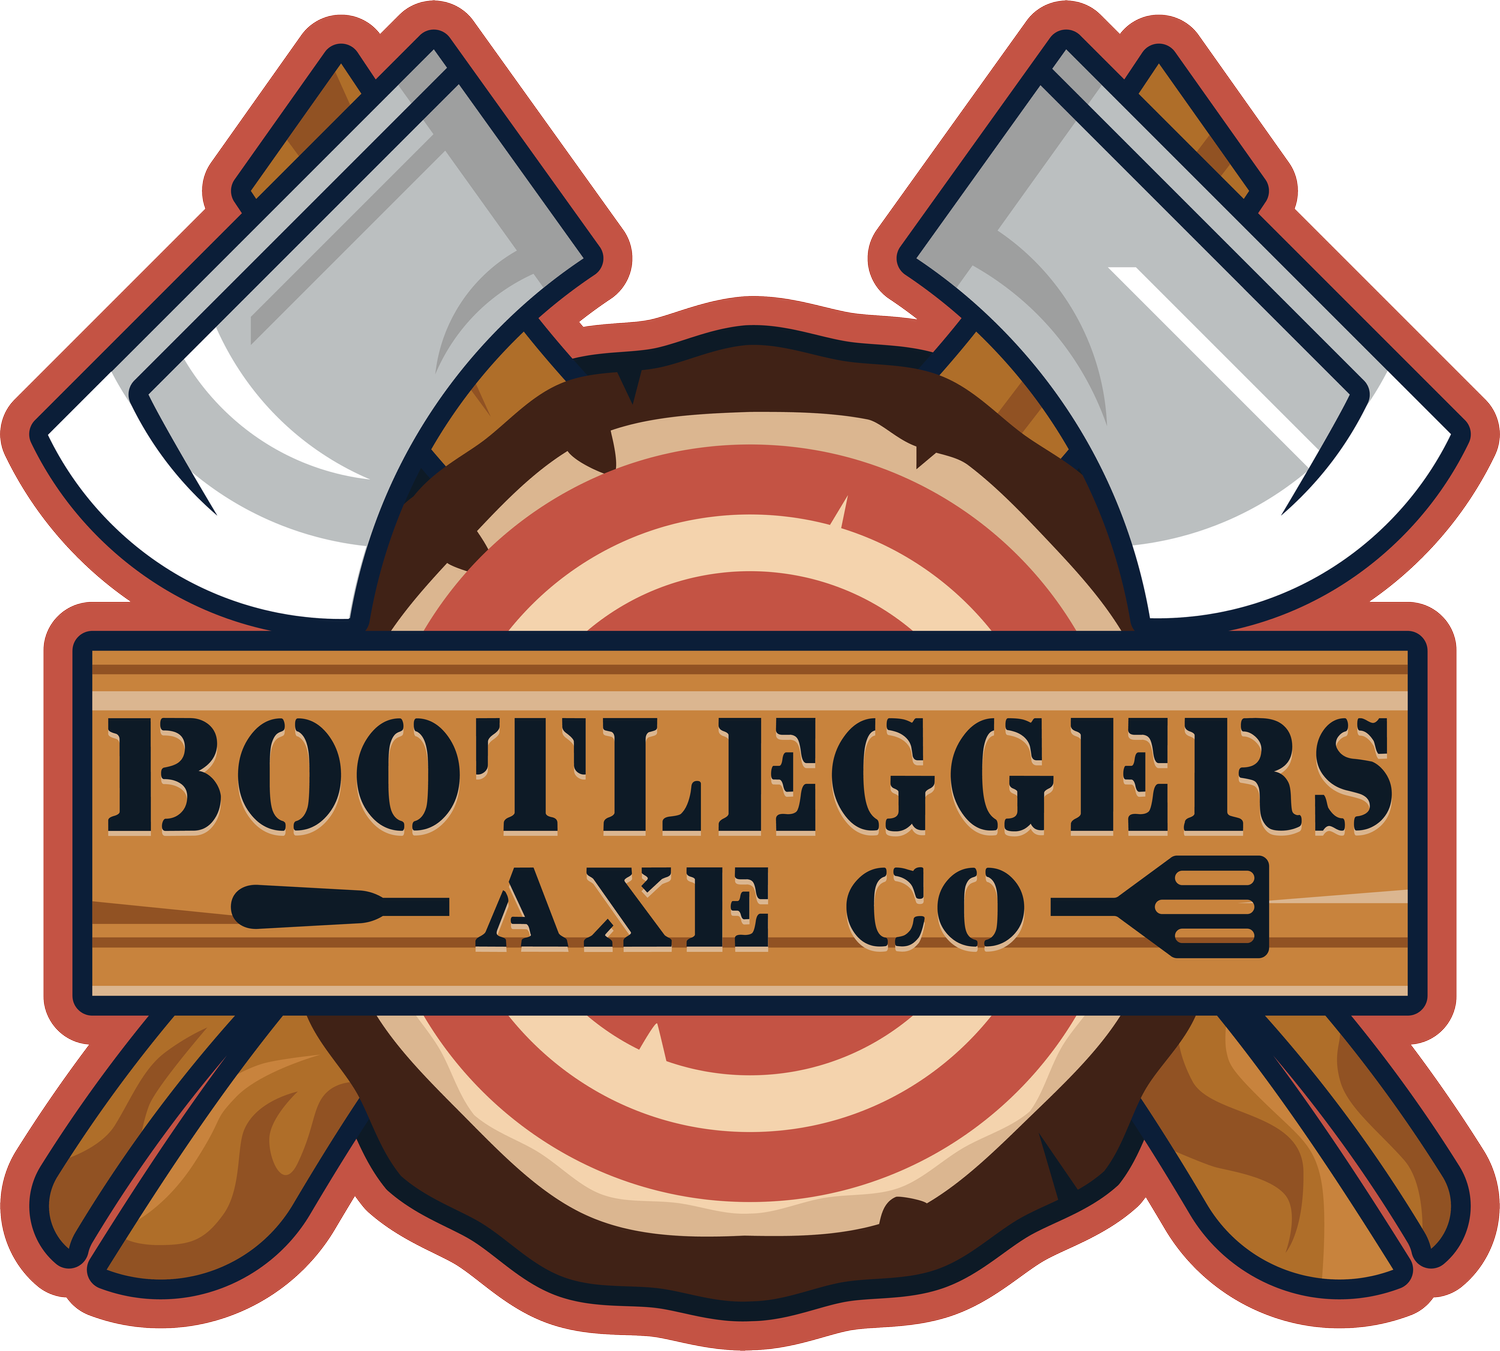 Bootleggers Axe Co.